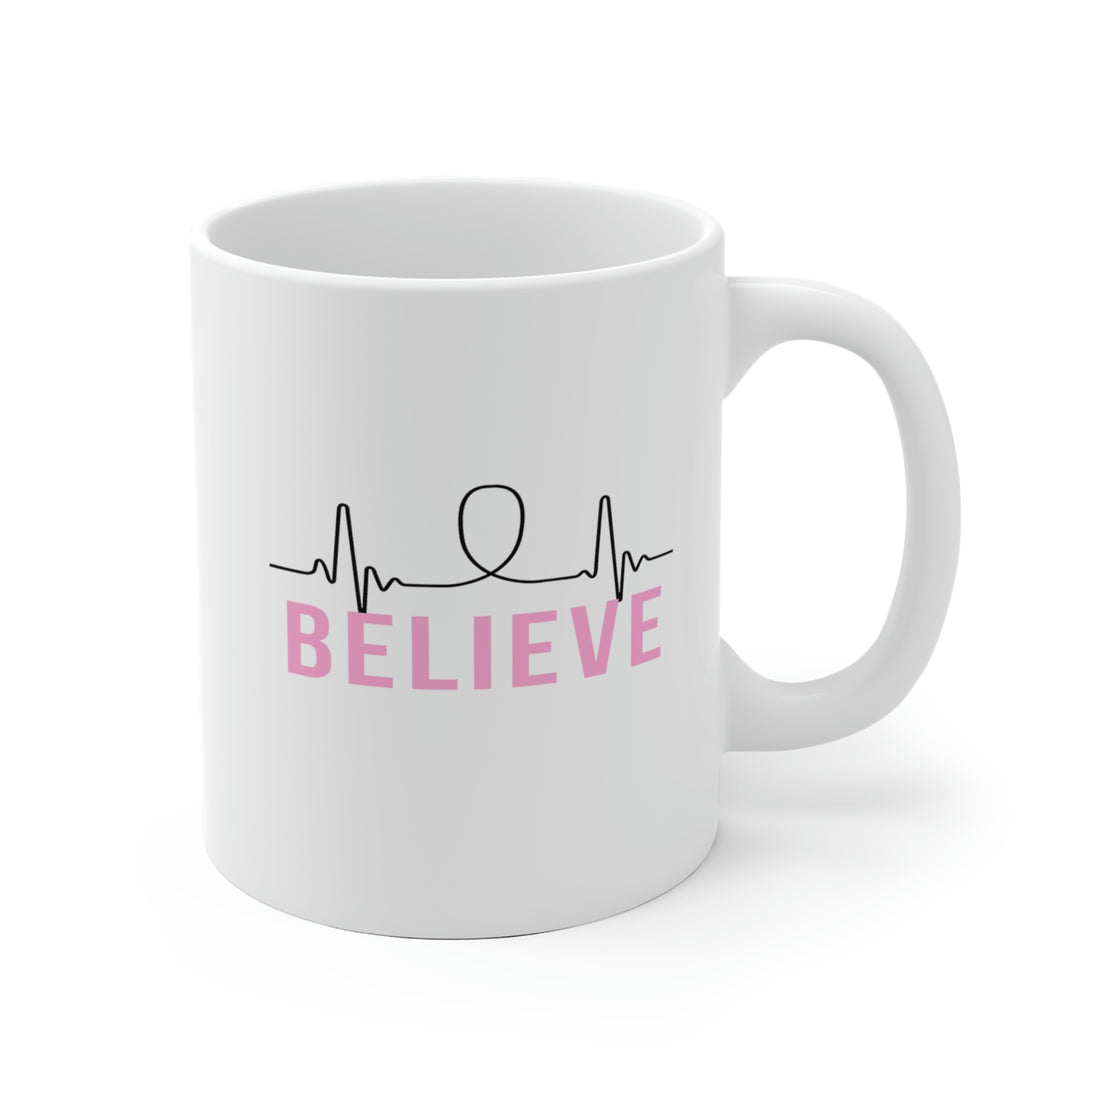 Believe - White Ceramic Mug 2 sizes Available